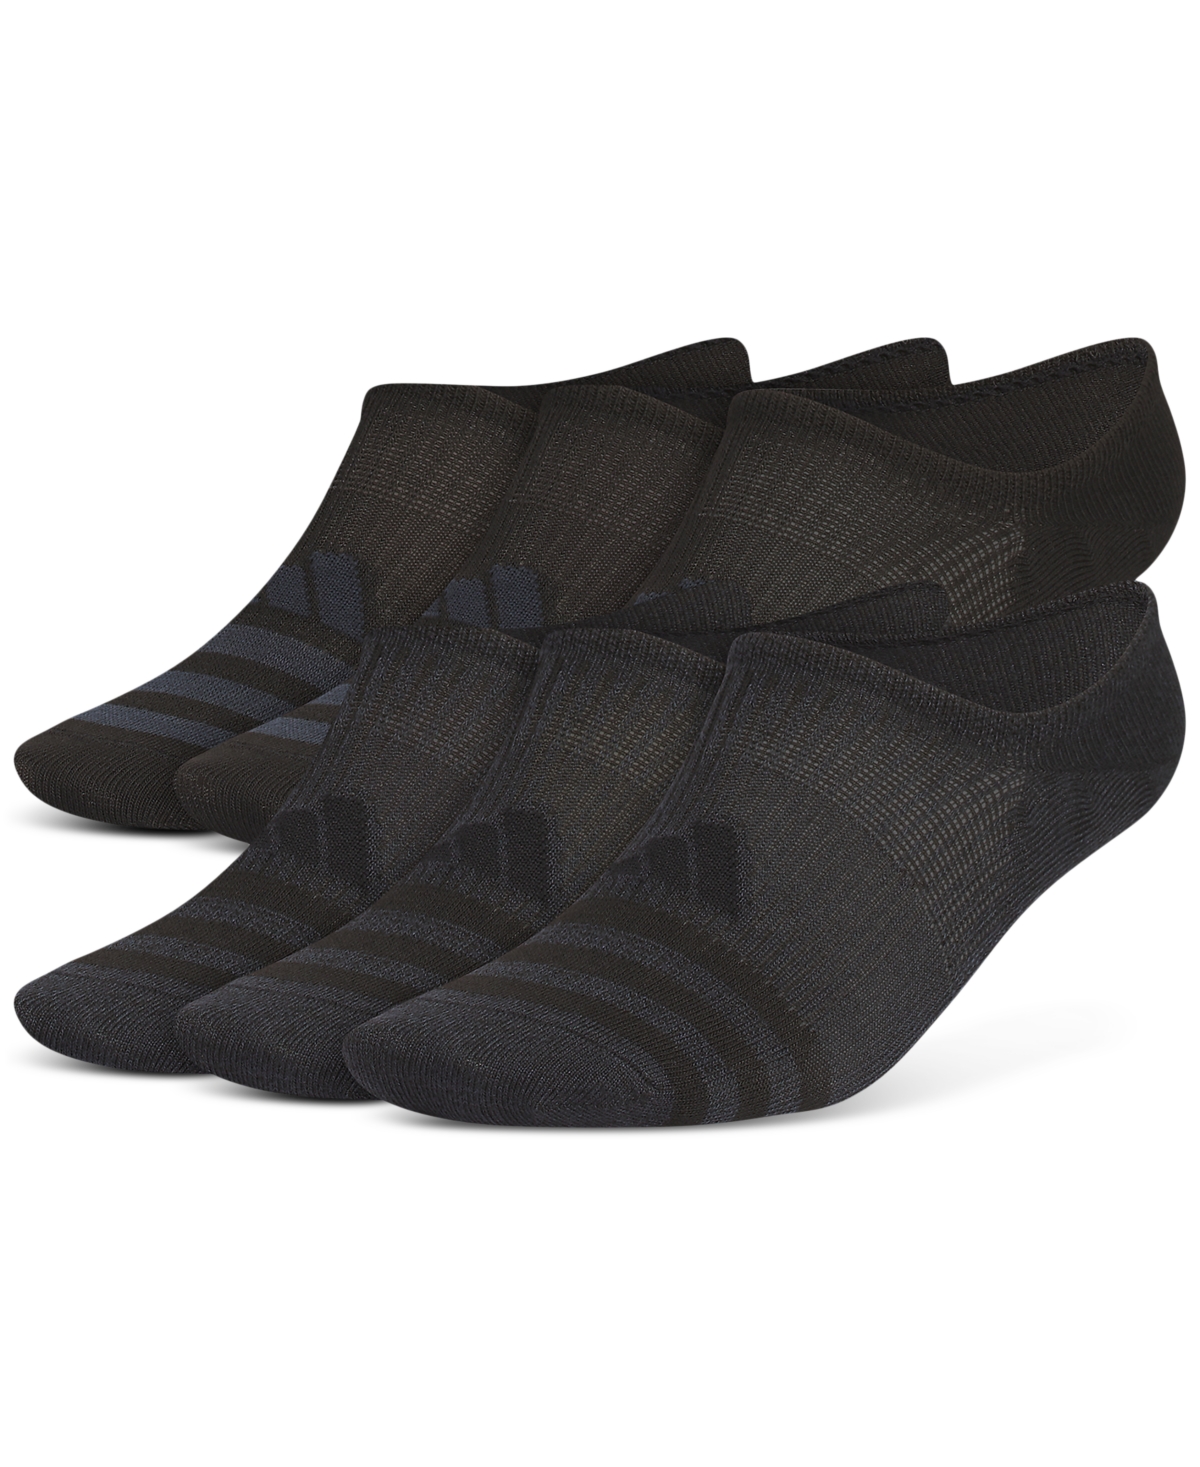 Men's Superlite 3.0 No-Show No-Slip Socks - 6 pk. - Black